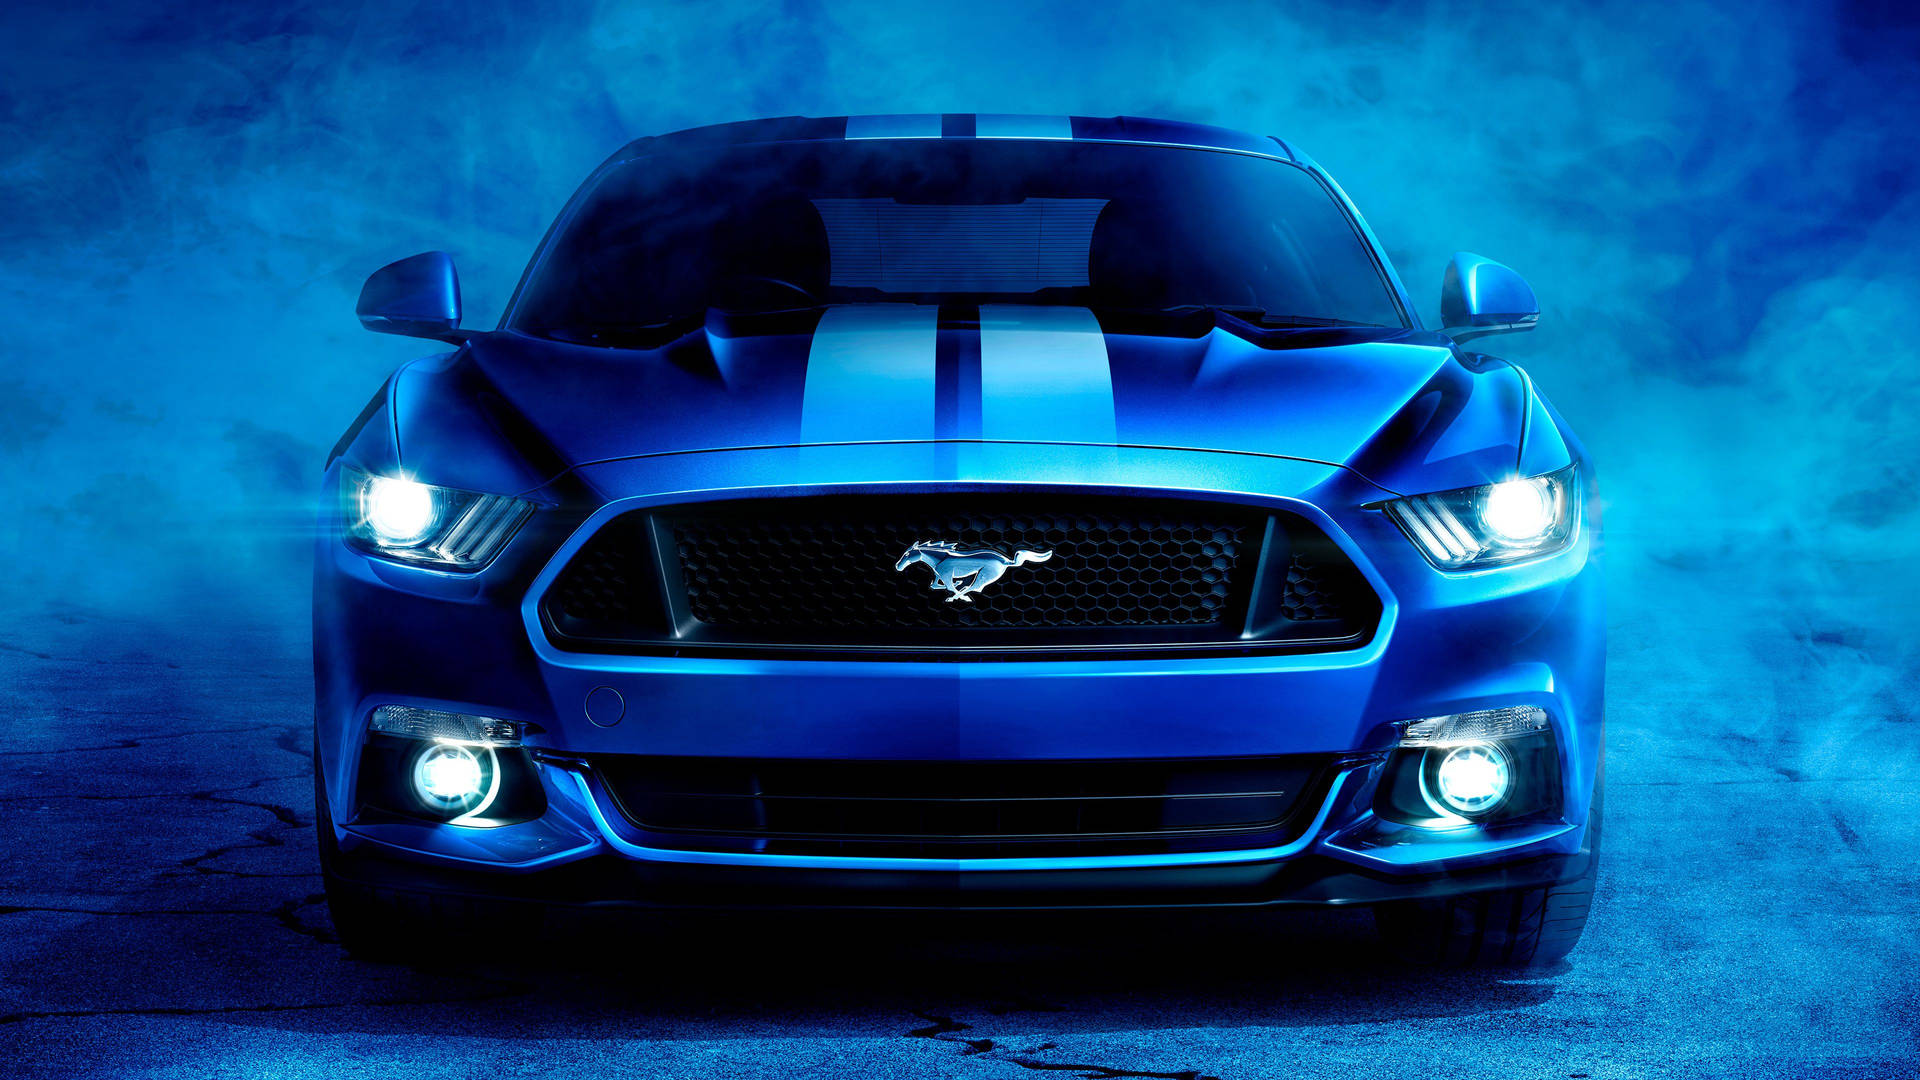 4kultra Hd Mustang Blauer Wagen Wallpaper